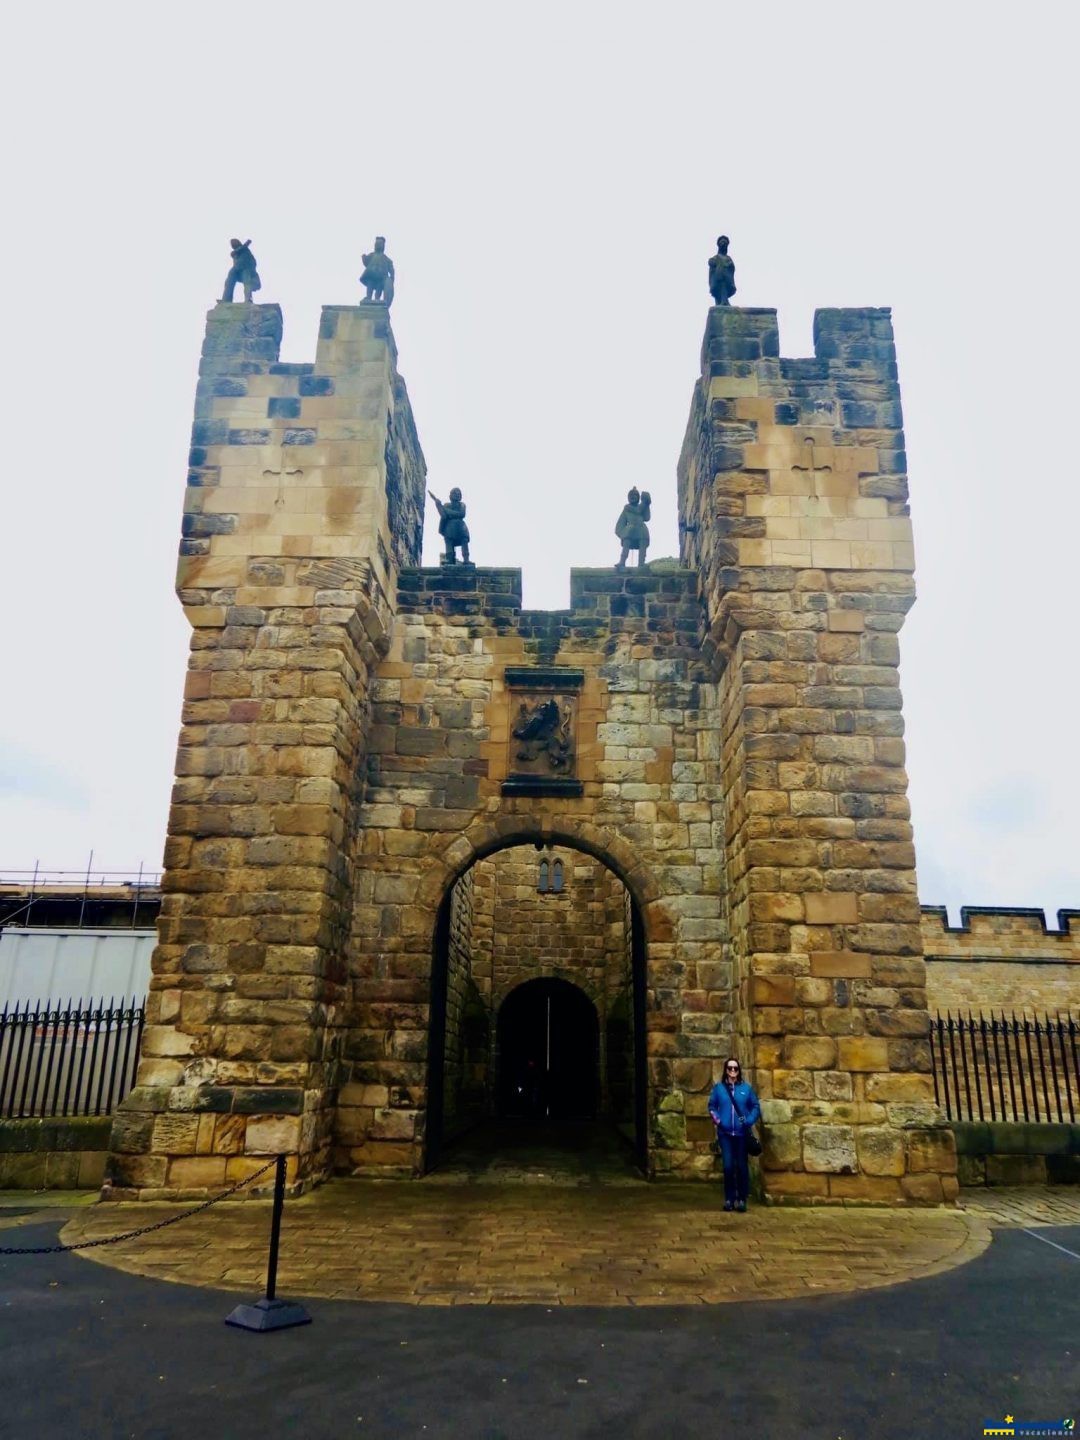 Castillo de Alnwick